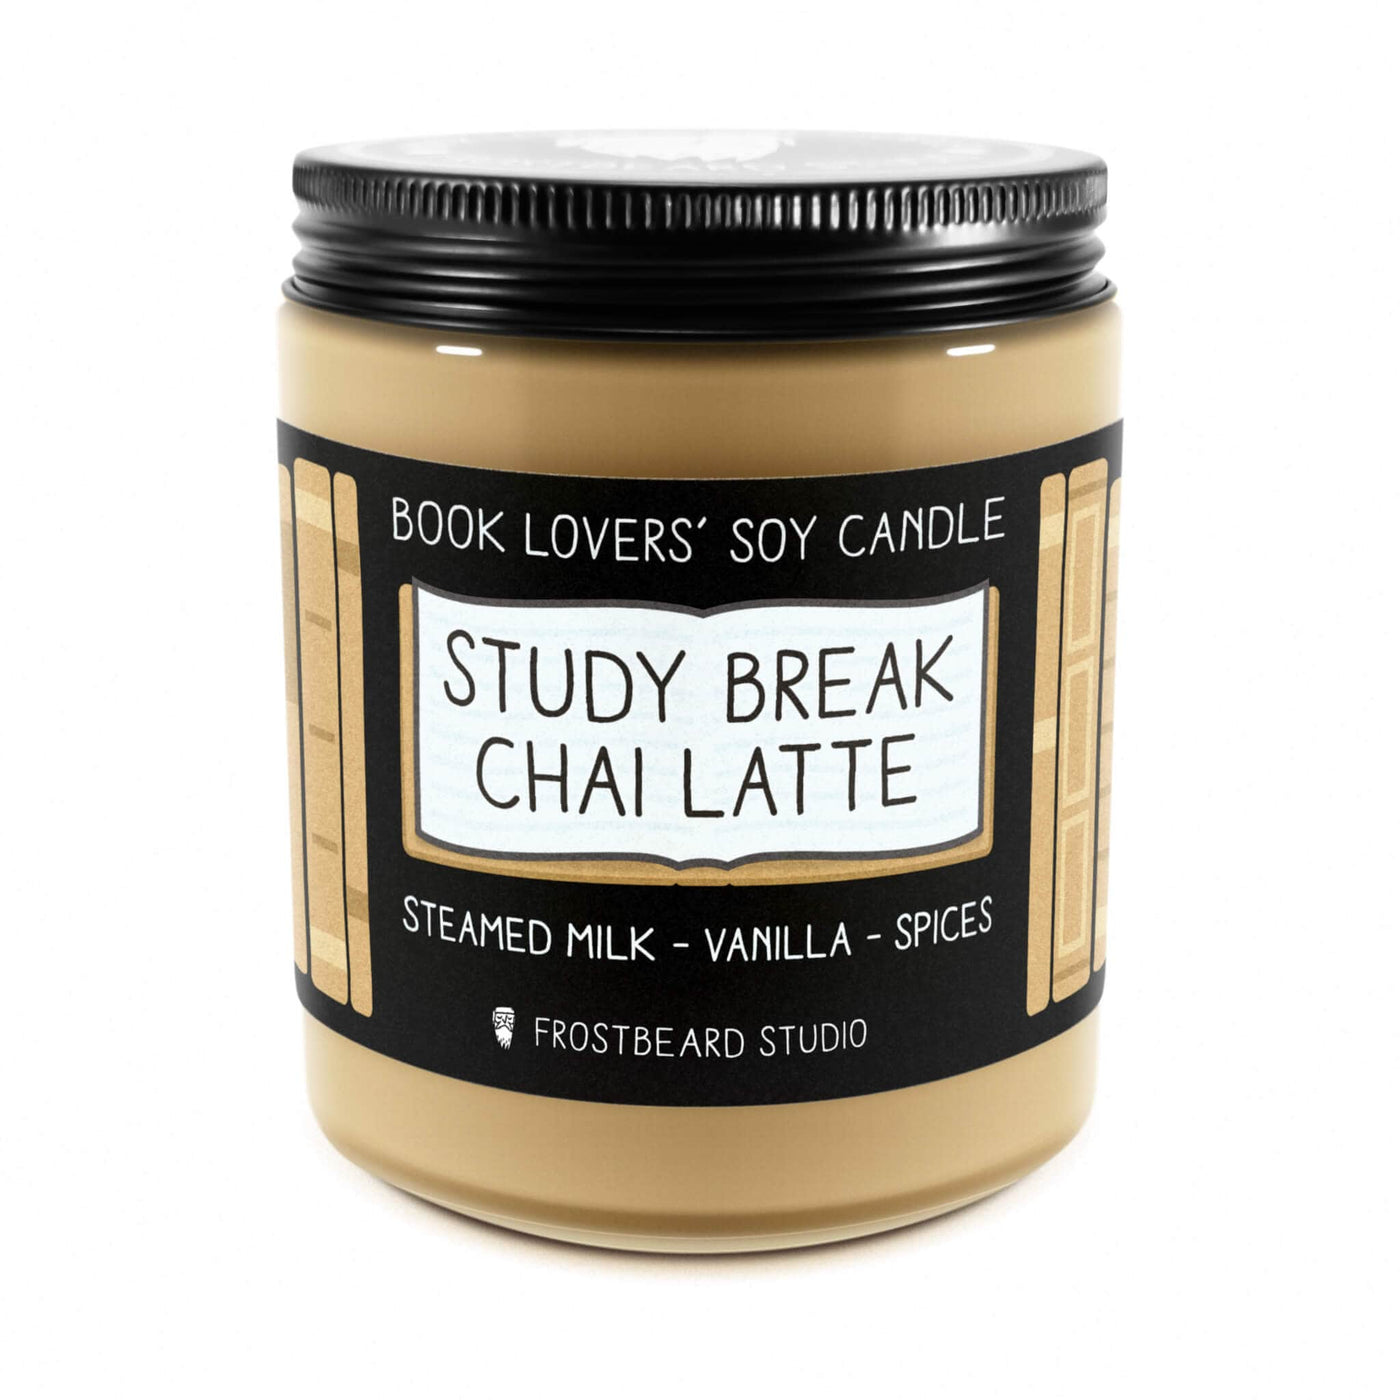 Study Break Chai Latte  -  8 oz Jar  -  Book Lovers' Soy Candle  -  Frostbeard Studio